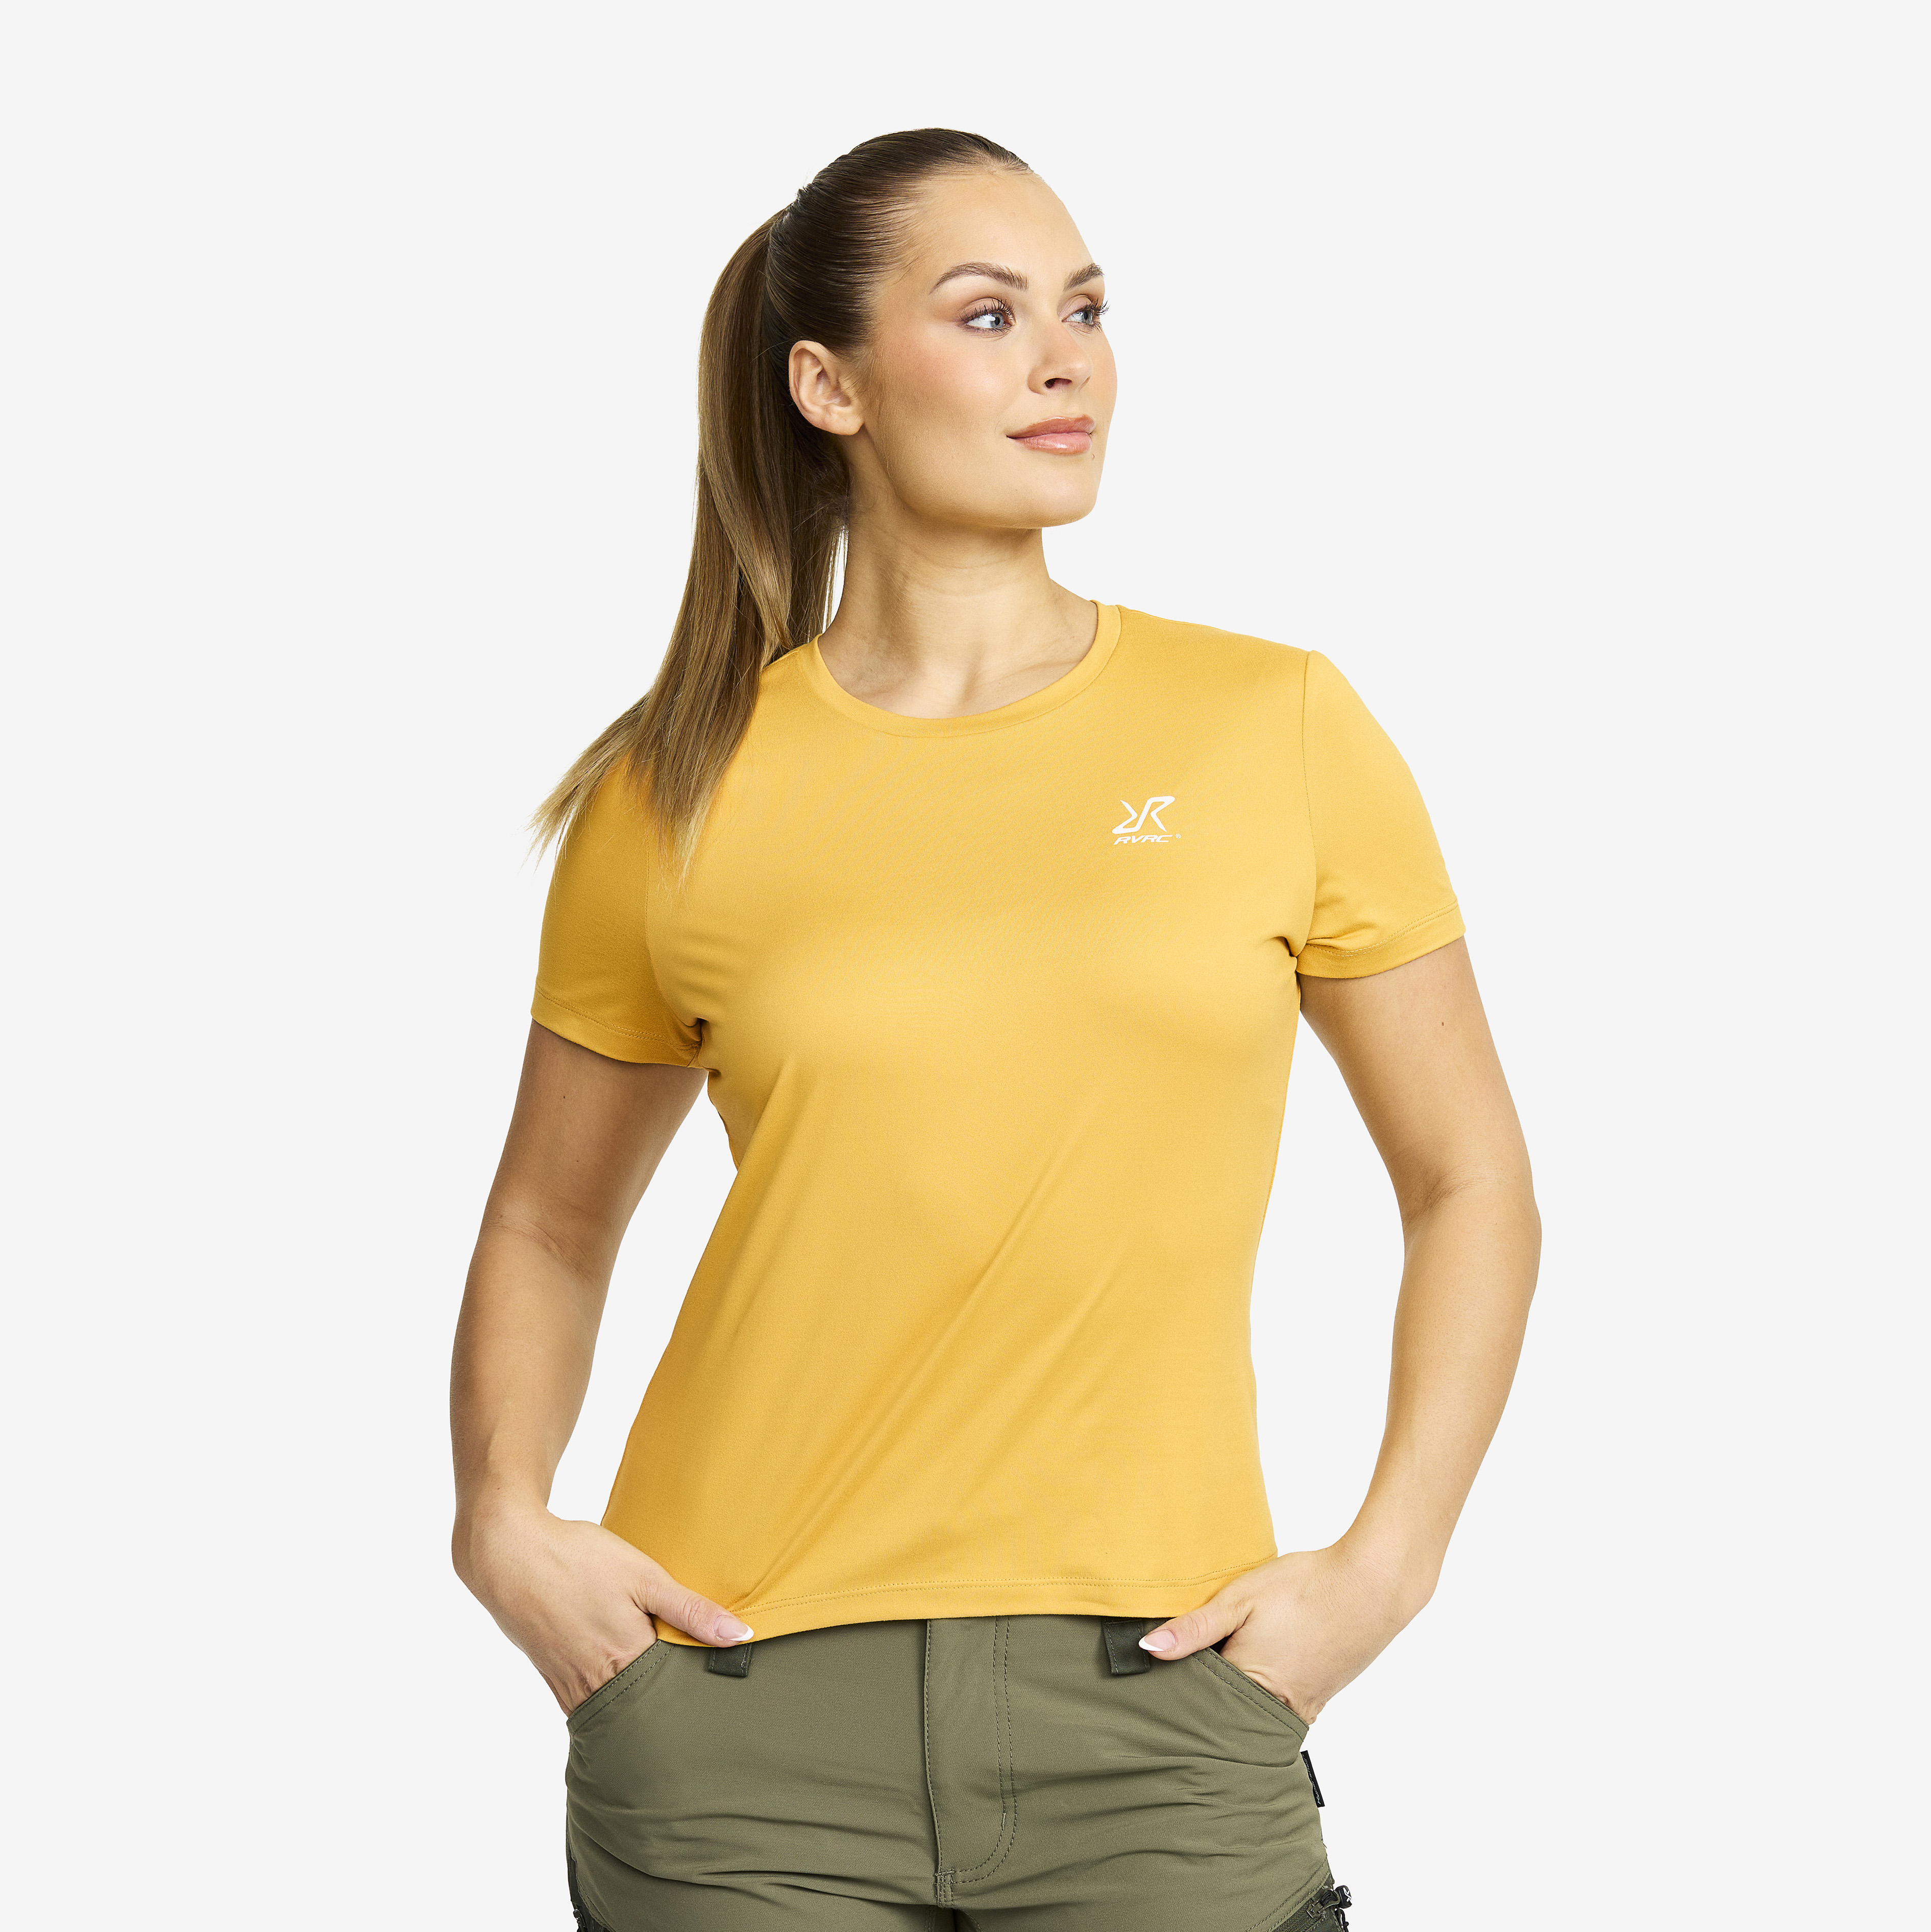 Mission T-shirt Sauterne Femme